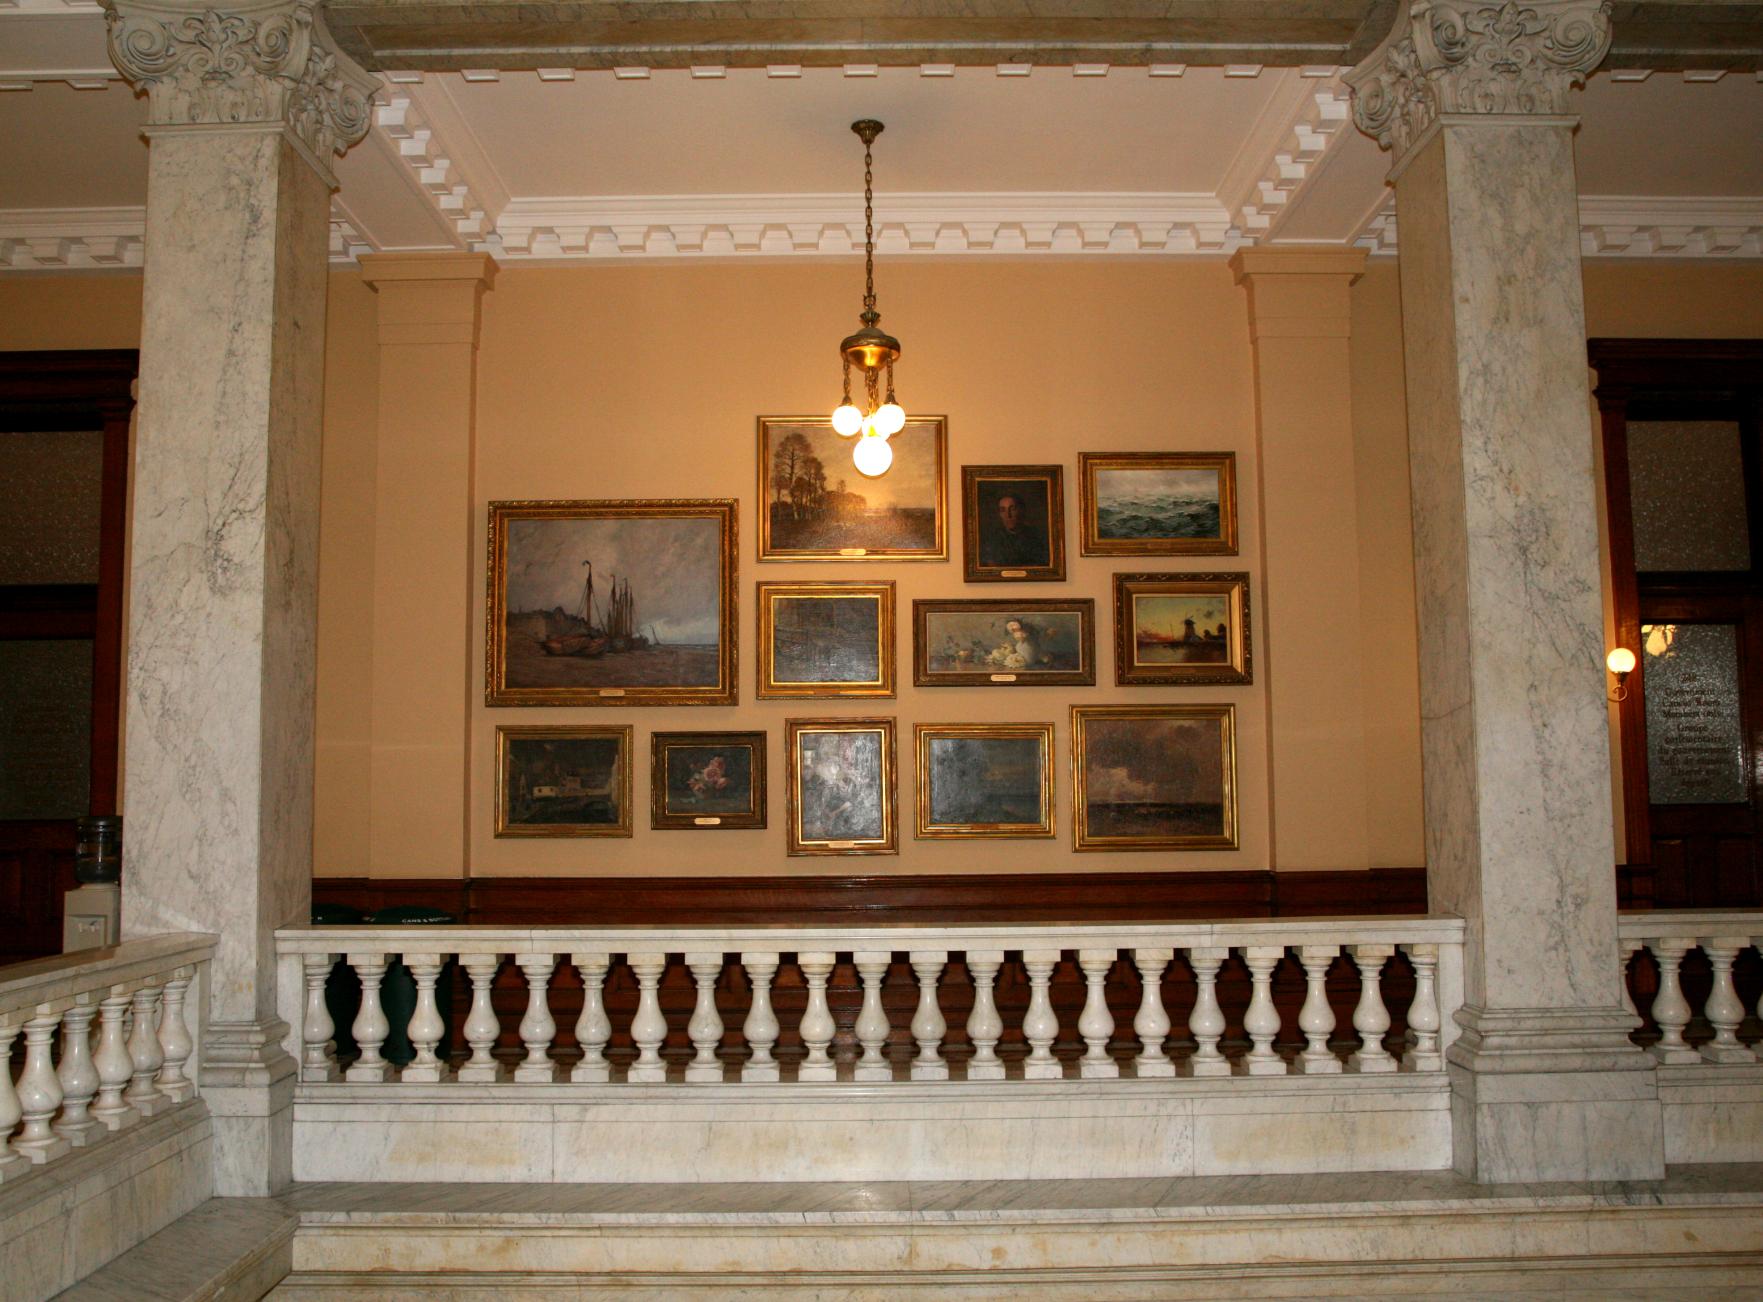 Œuvres de la collection d'œuvres d’art du gouvernement de l'Ontario, ornant les murs de l'aile nord de l'Édifice de l'Assemblée législative. ©Assemblée législative de l’Ontario